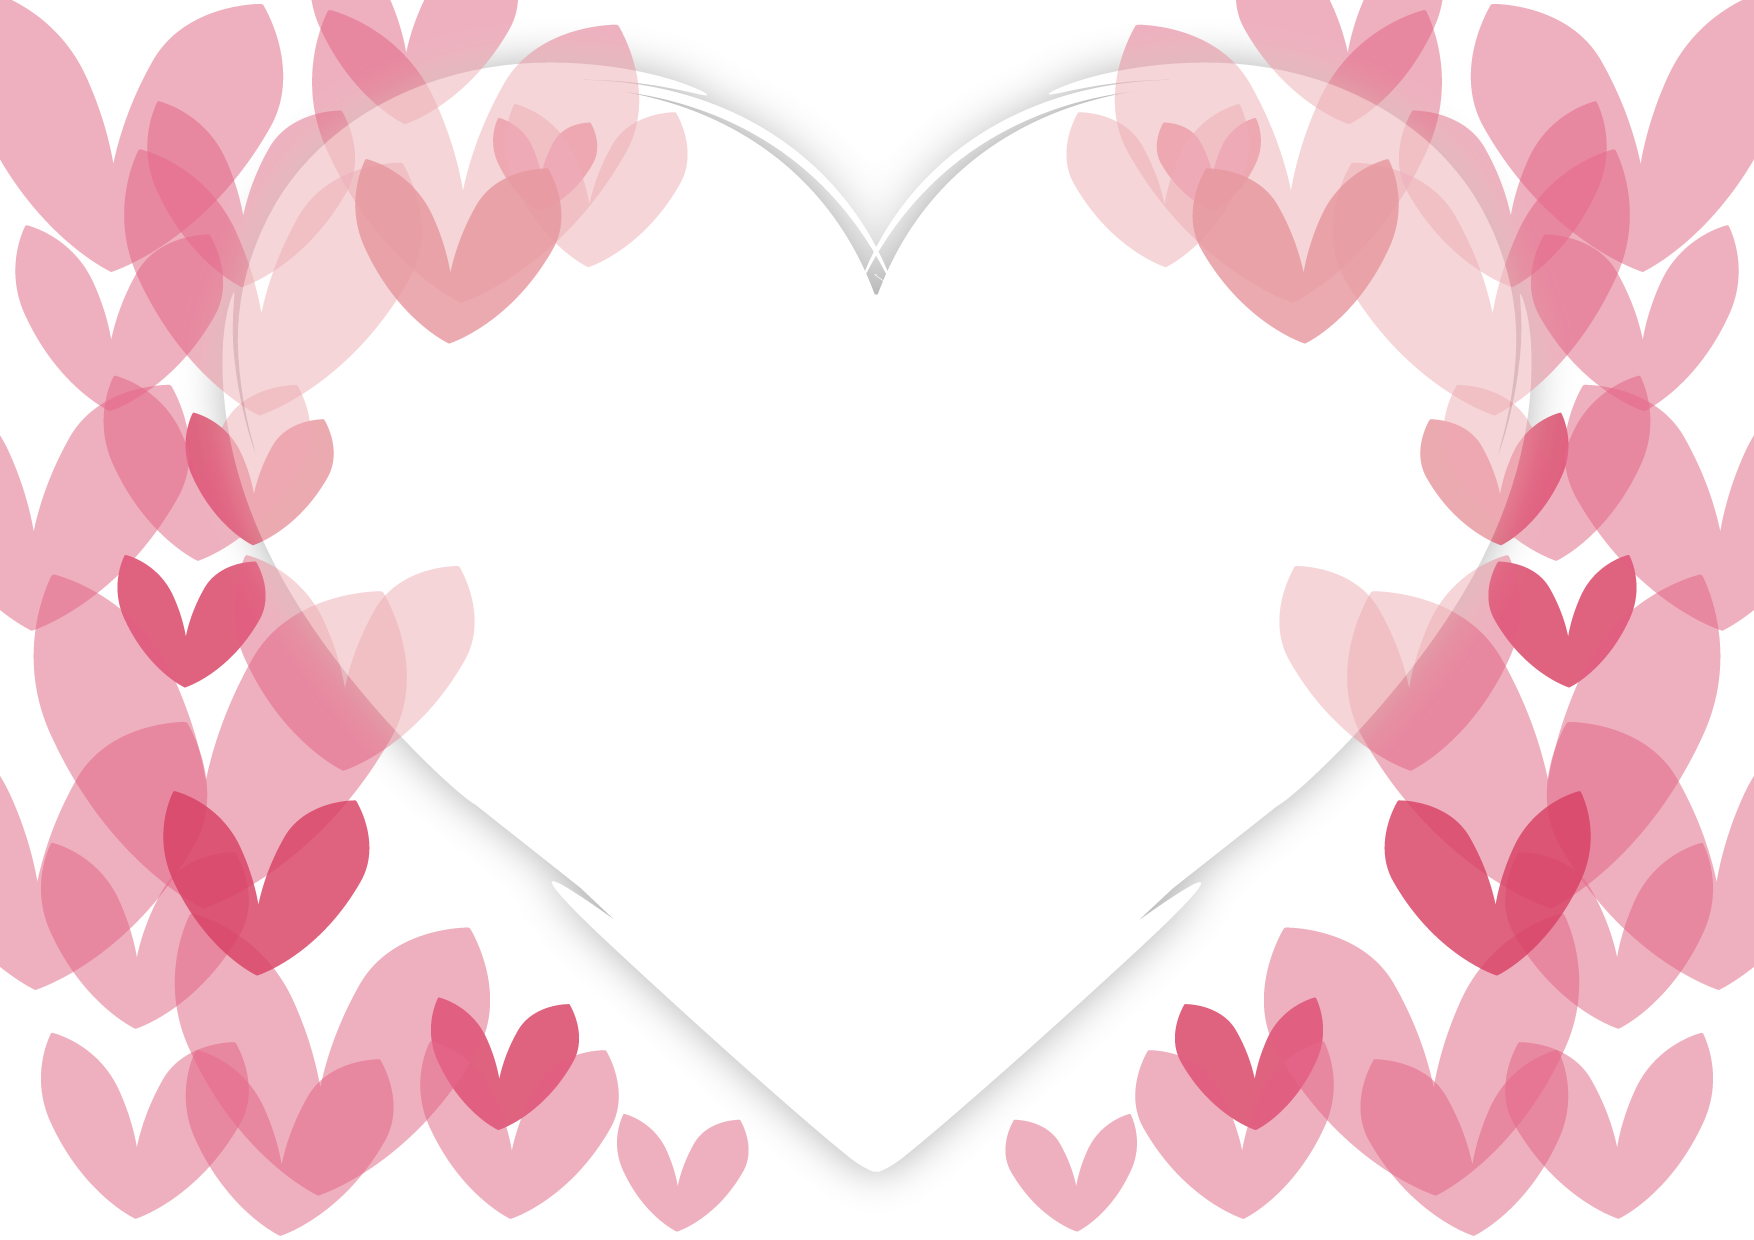 可愛いイラスト無料 バレンタイン ハート 背景 ピンク Free Illustration Valentine Heart Background Pink 公式 イラスト素材サイト イラストダウンロード